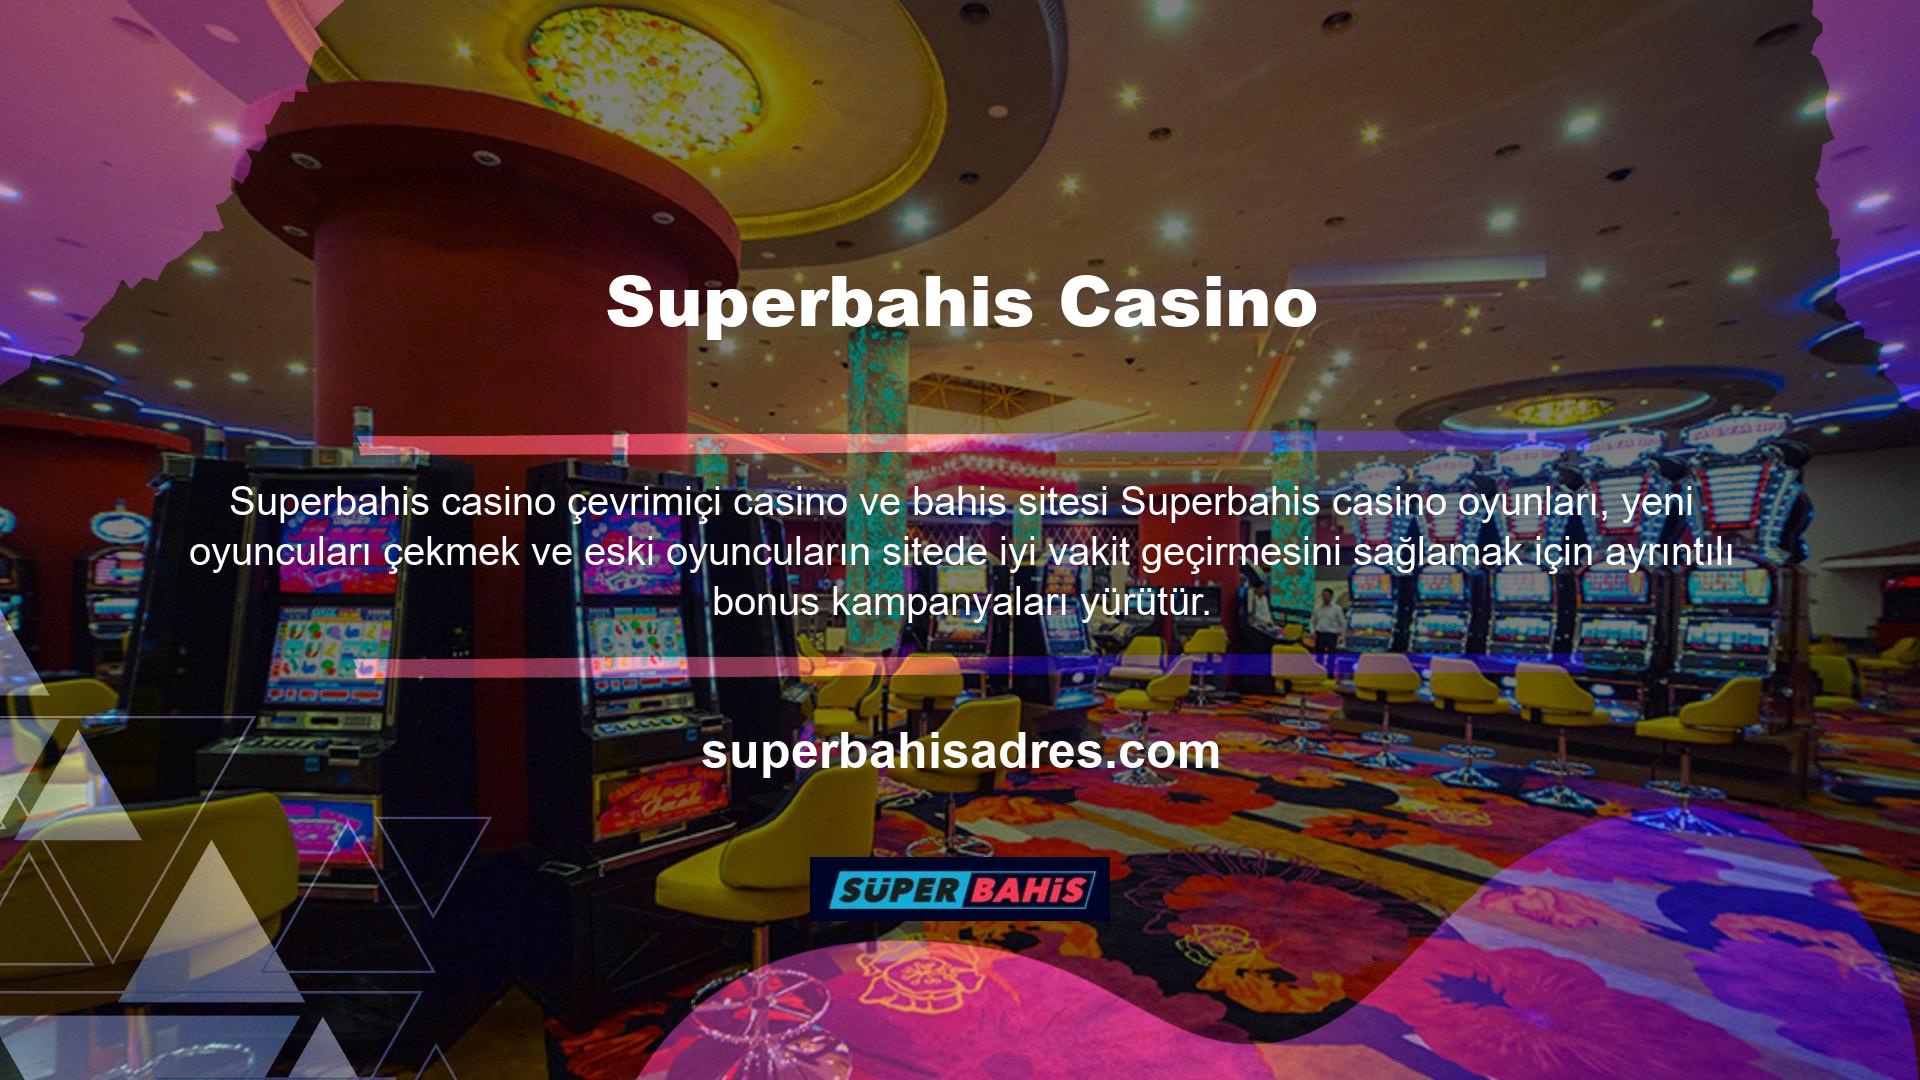 Bonus teklifleri konusunda oldukça cömert kabul edilen site, spor bahisleri ve casino oyunları için yeni oyuncular için ayrı hoş geldin bonusları sunmaktadır